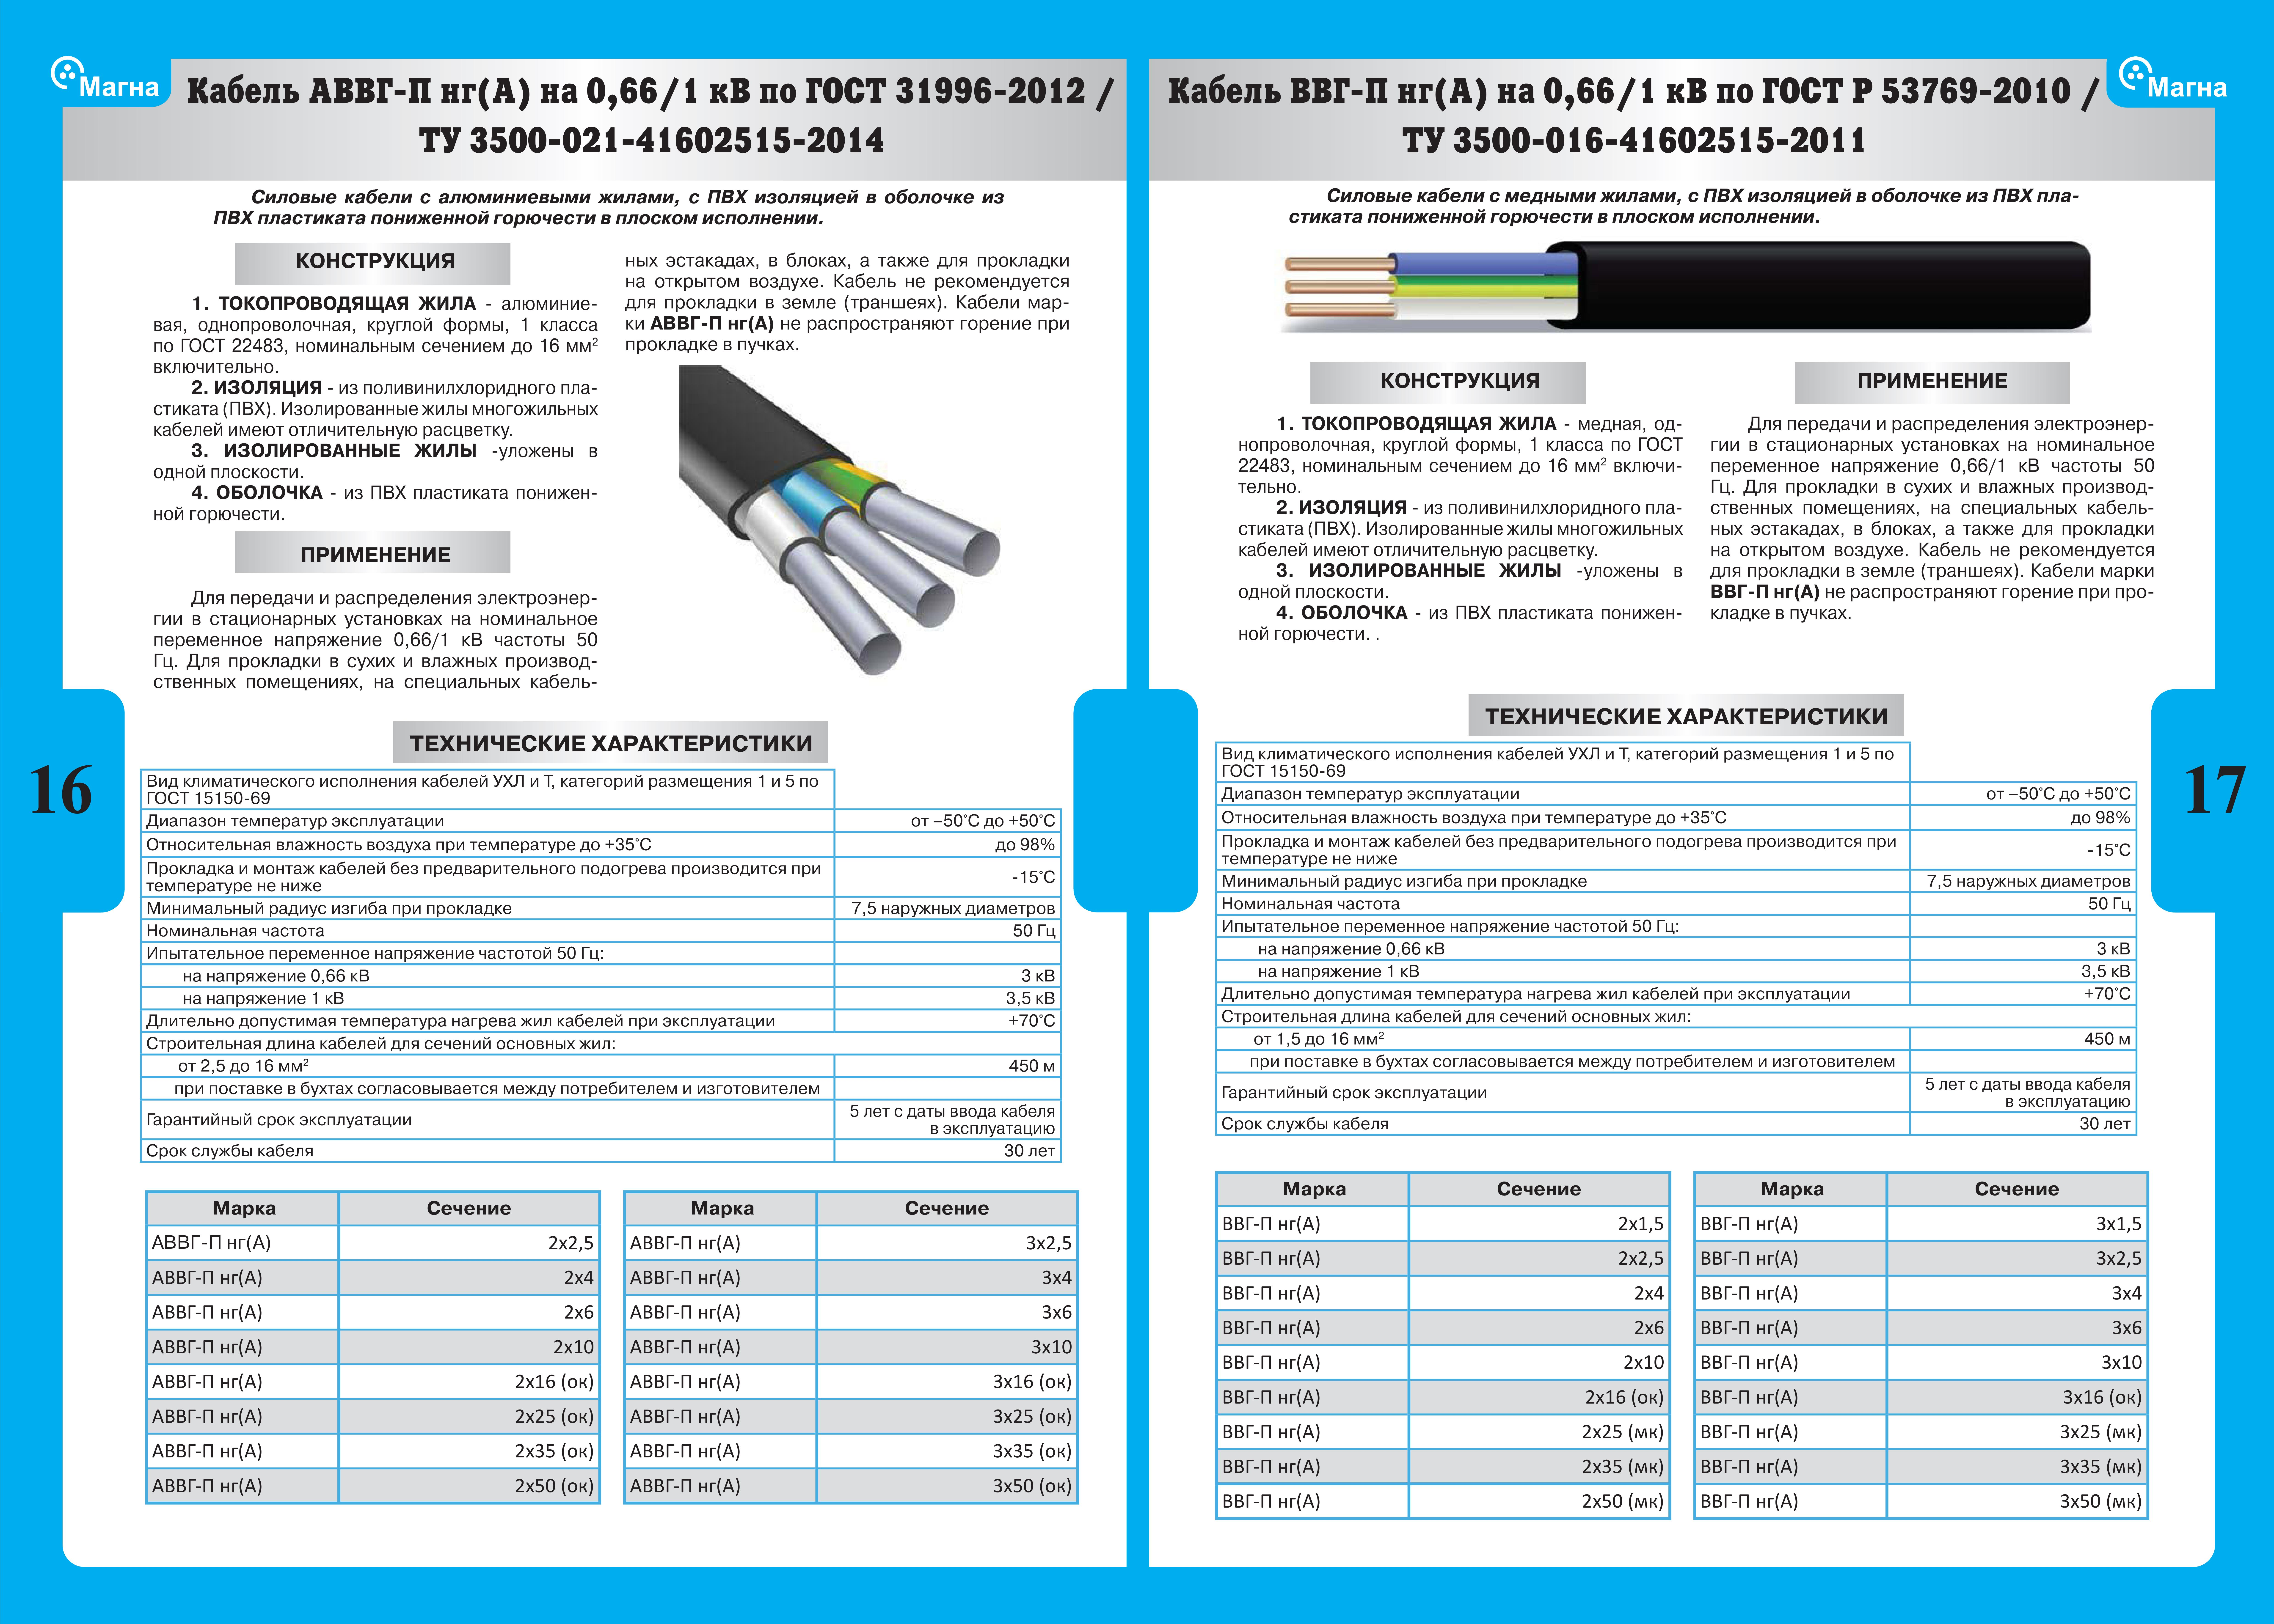 Силовой кабель кг-хл. технические характеристики, расшифровка и производители